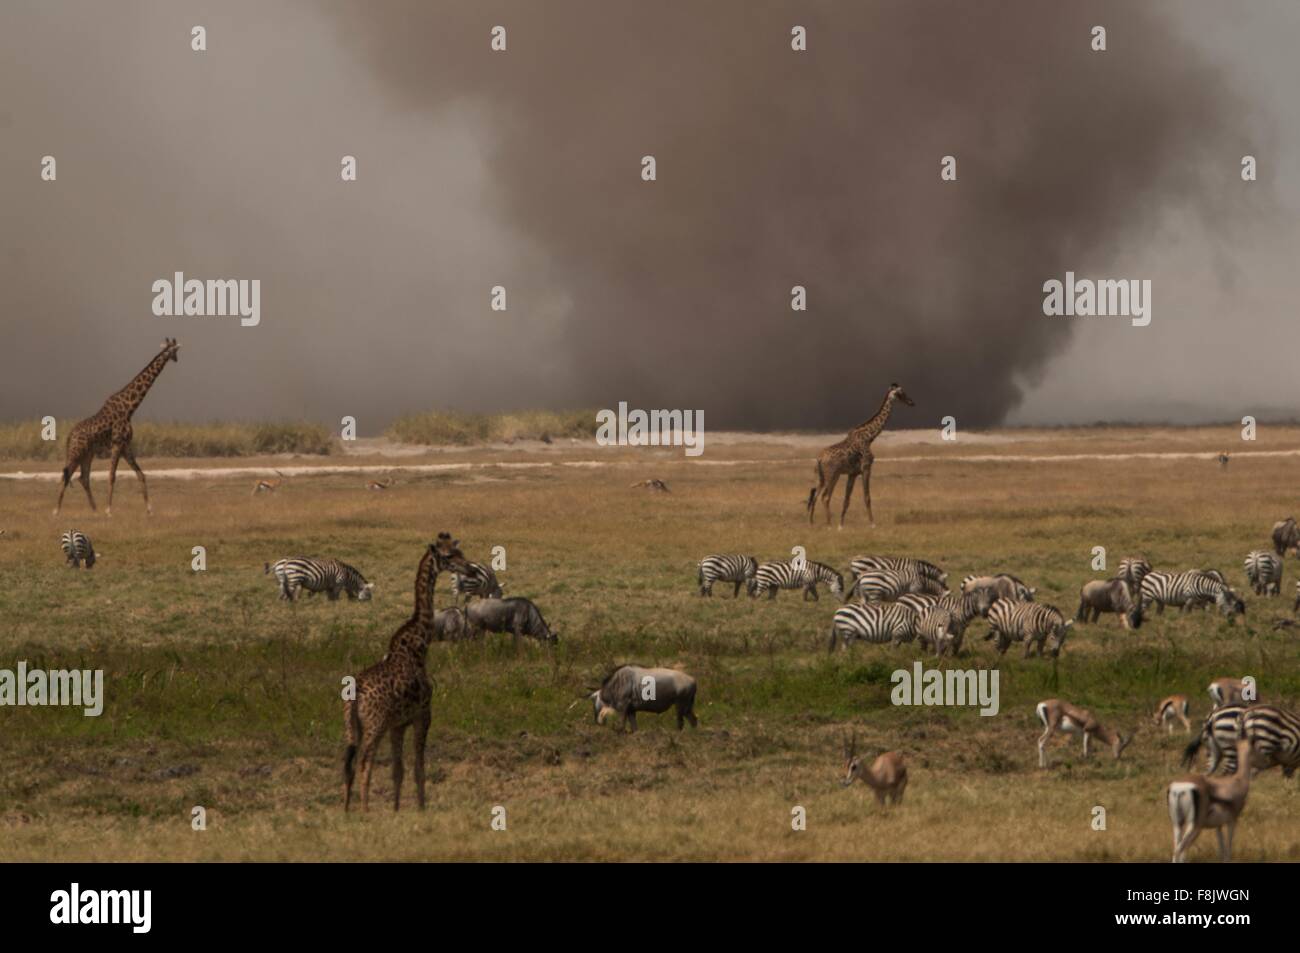 Les zèbres et les girafes en pâturage tempête de poussière sur un horizon, Masai Mara, Kenya Banque D'Images